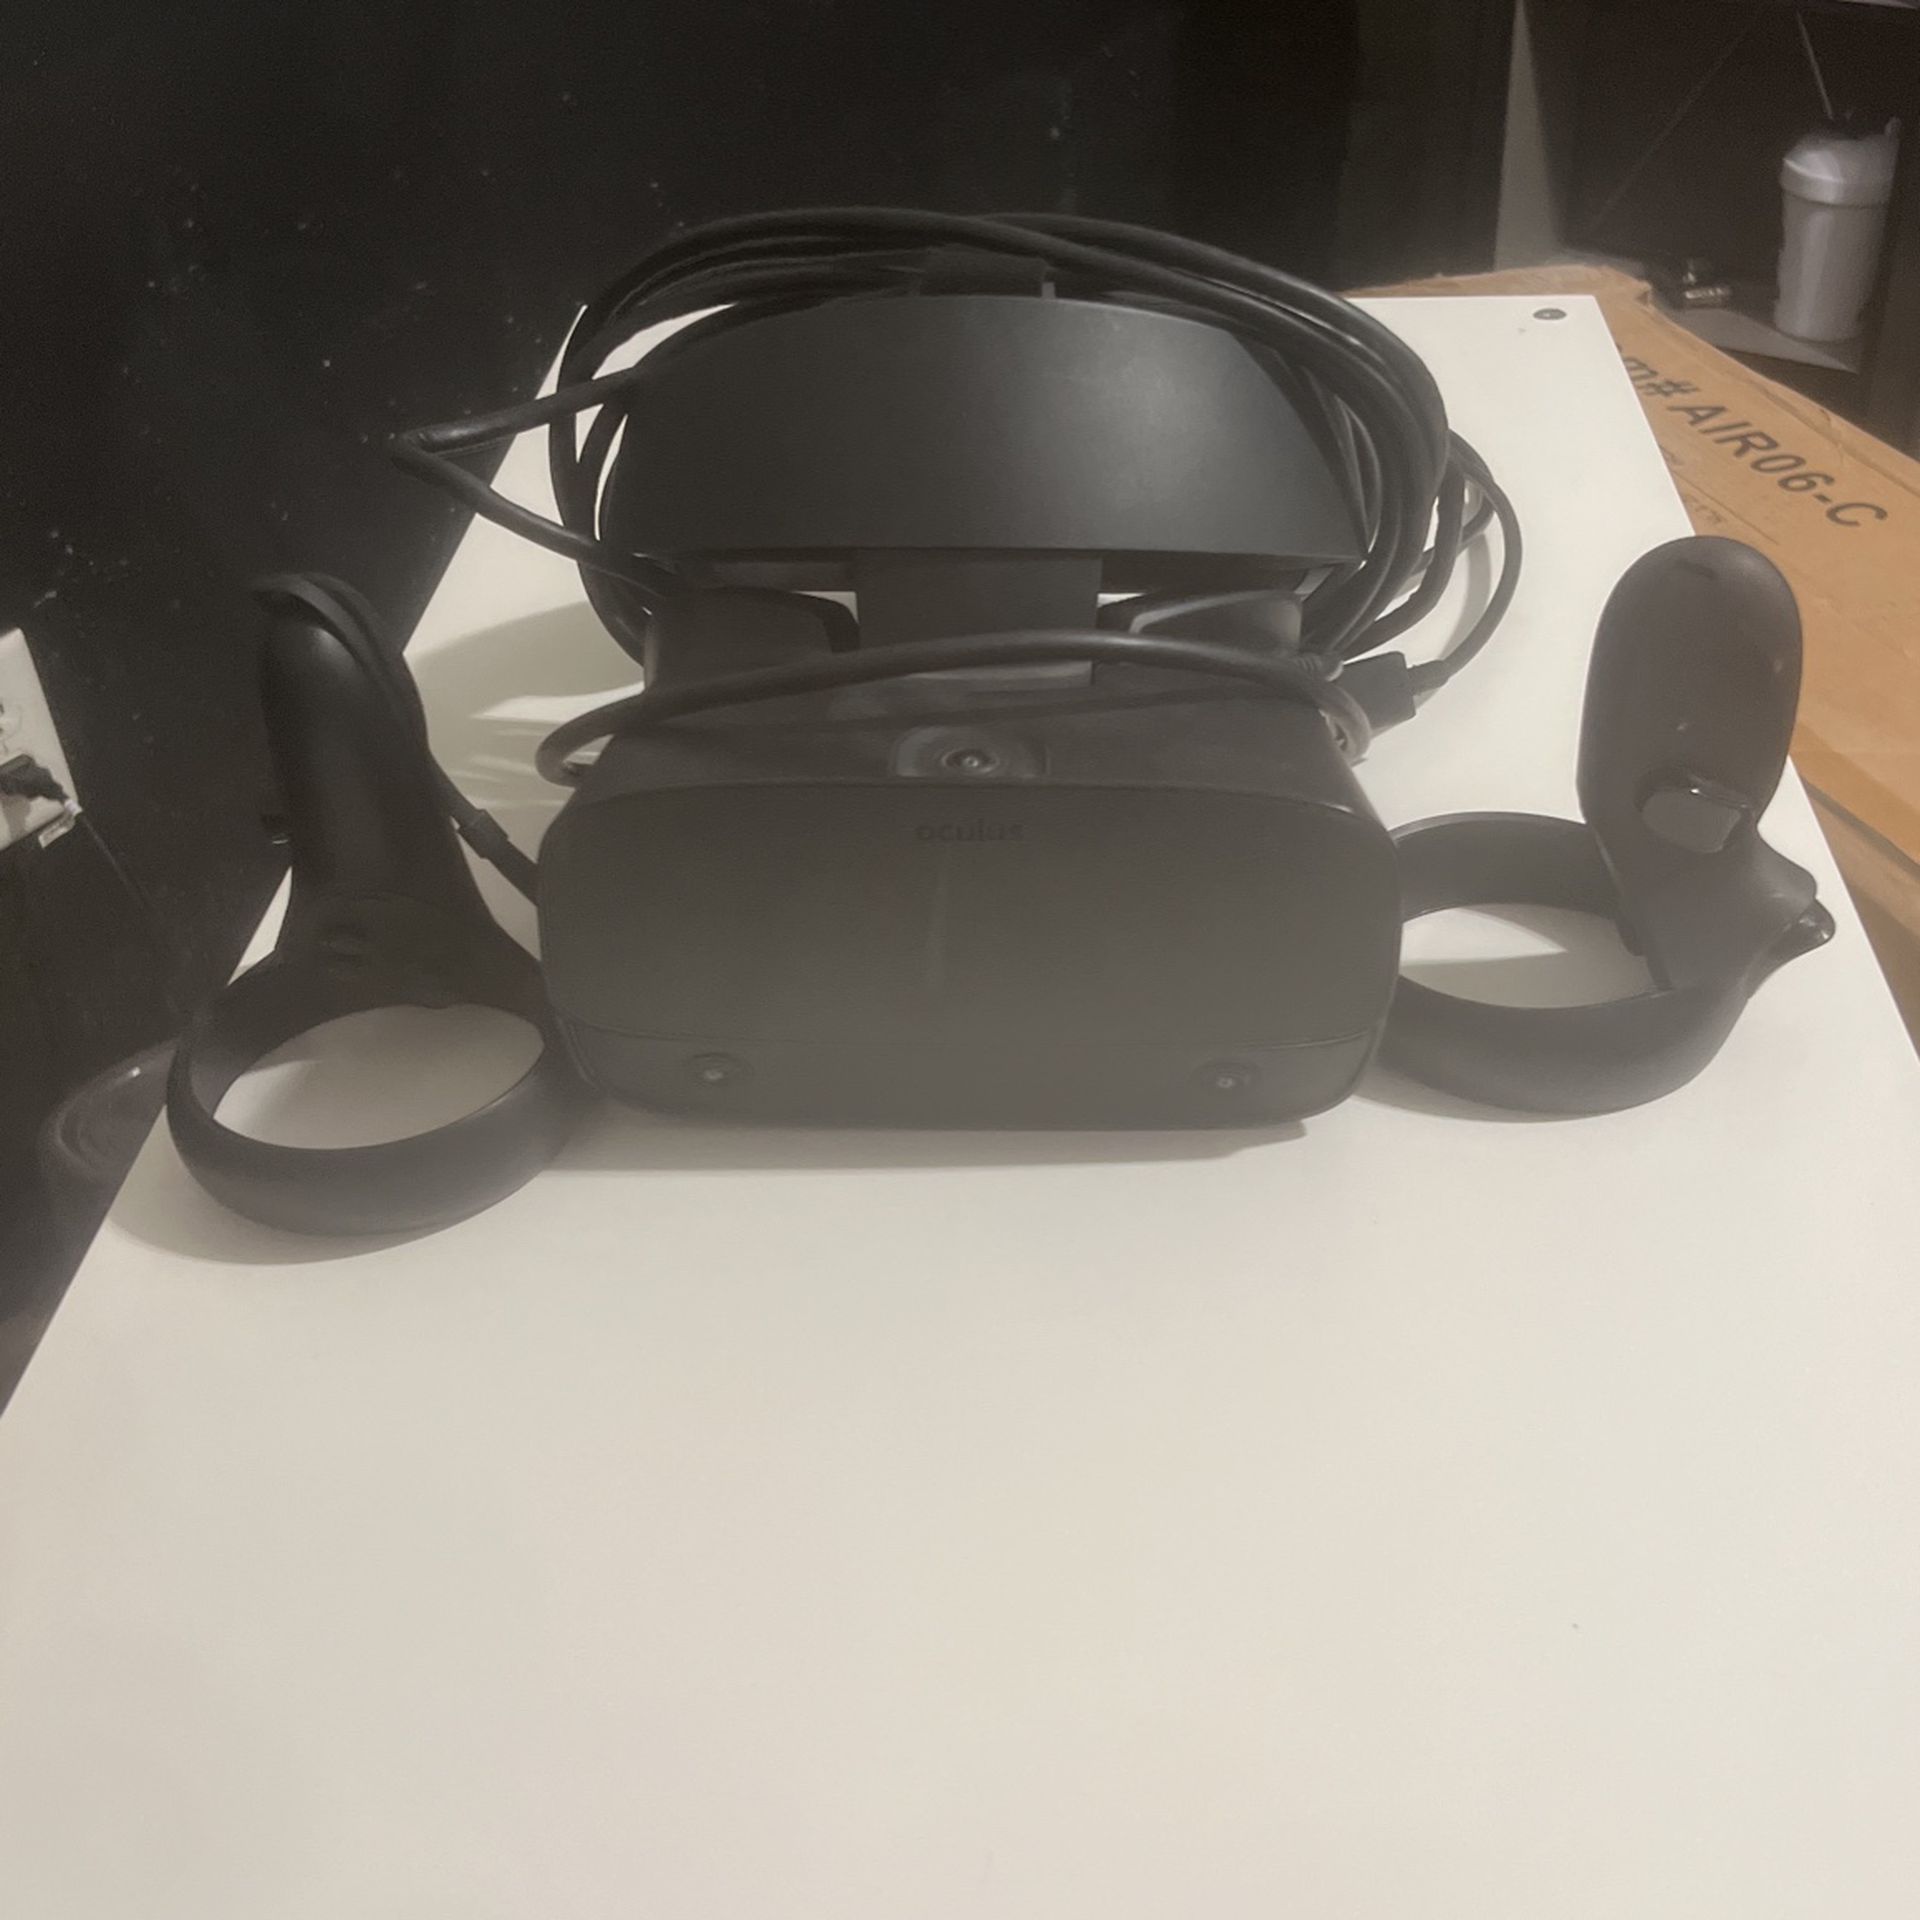 Oculus Rift S Vr Headset 